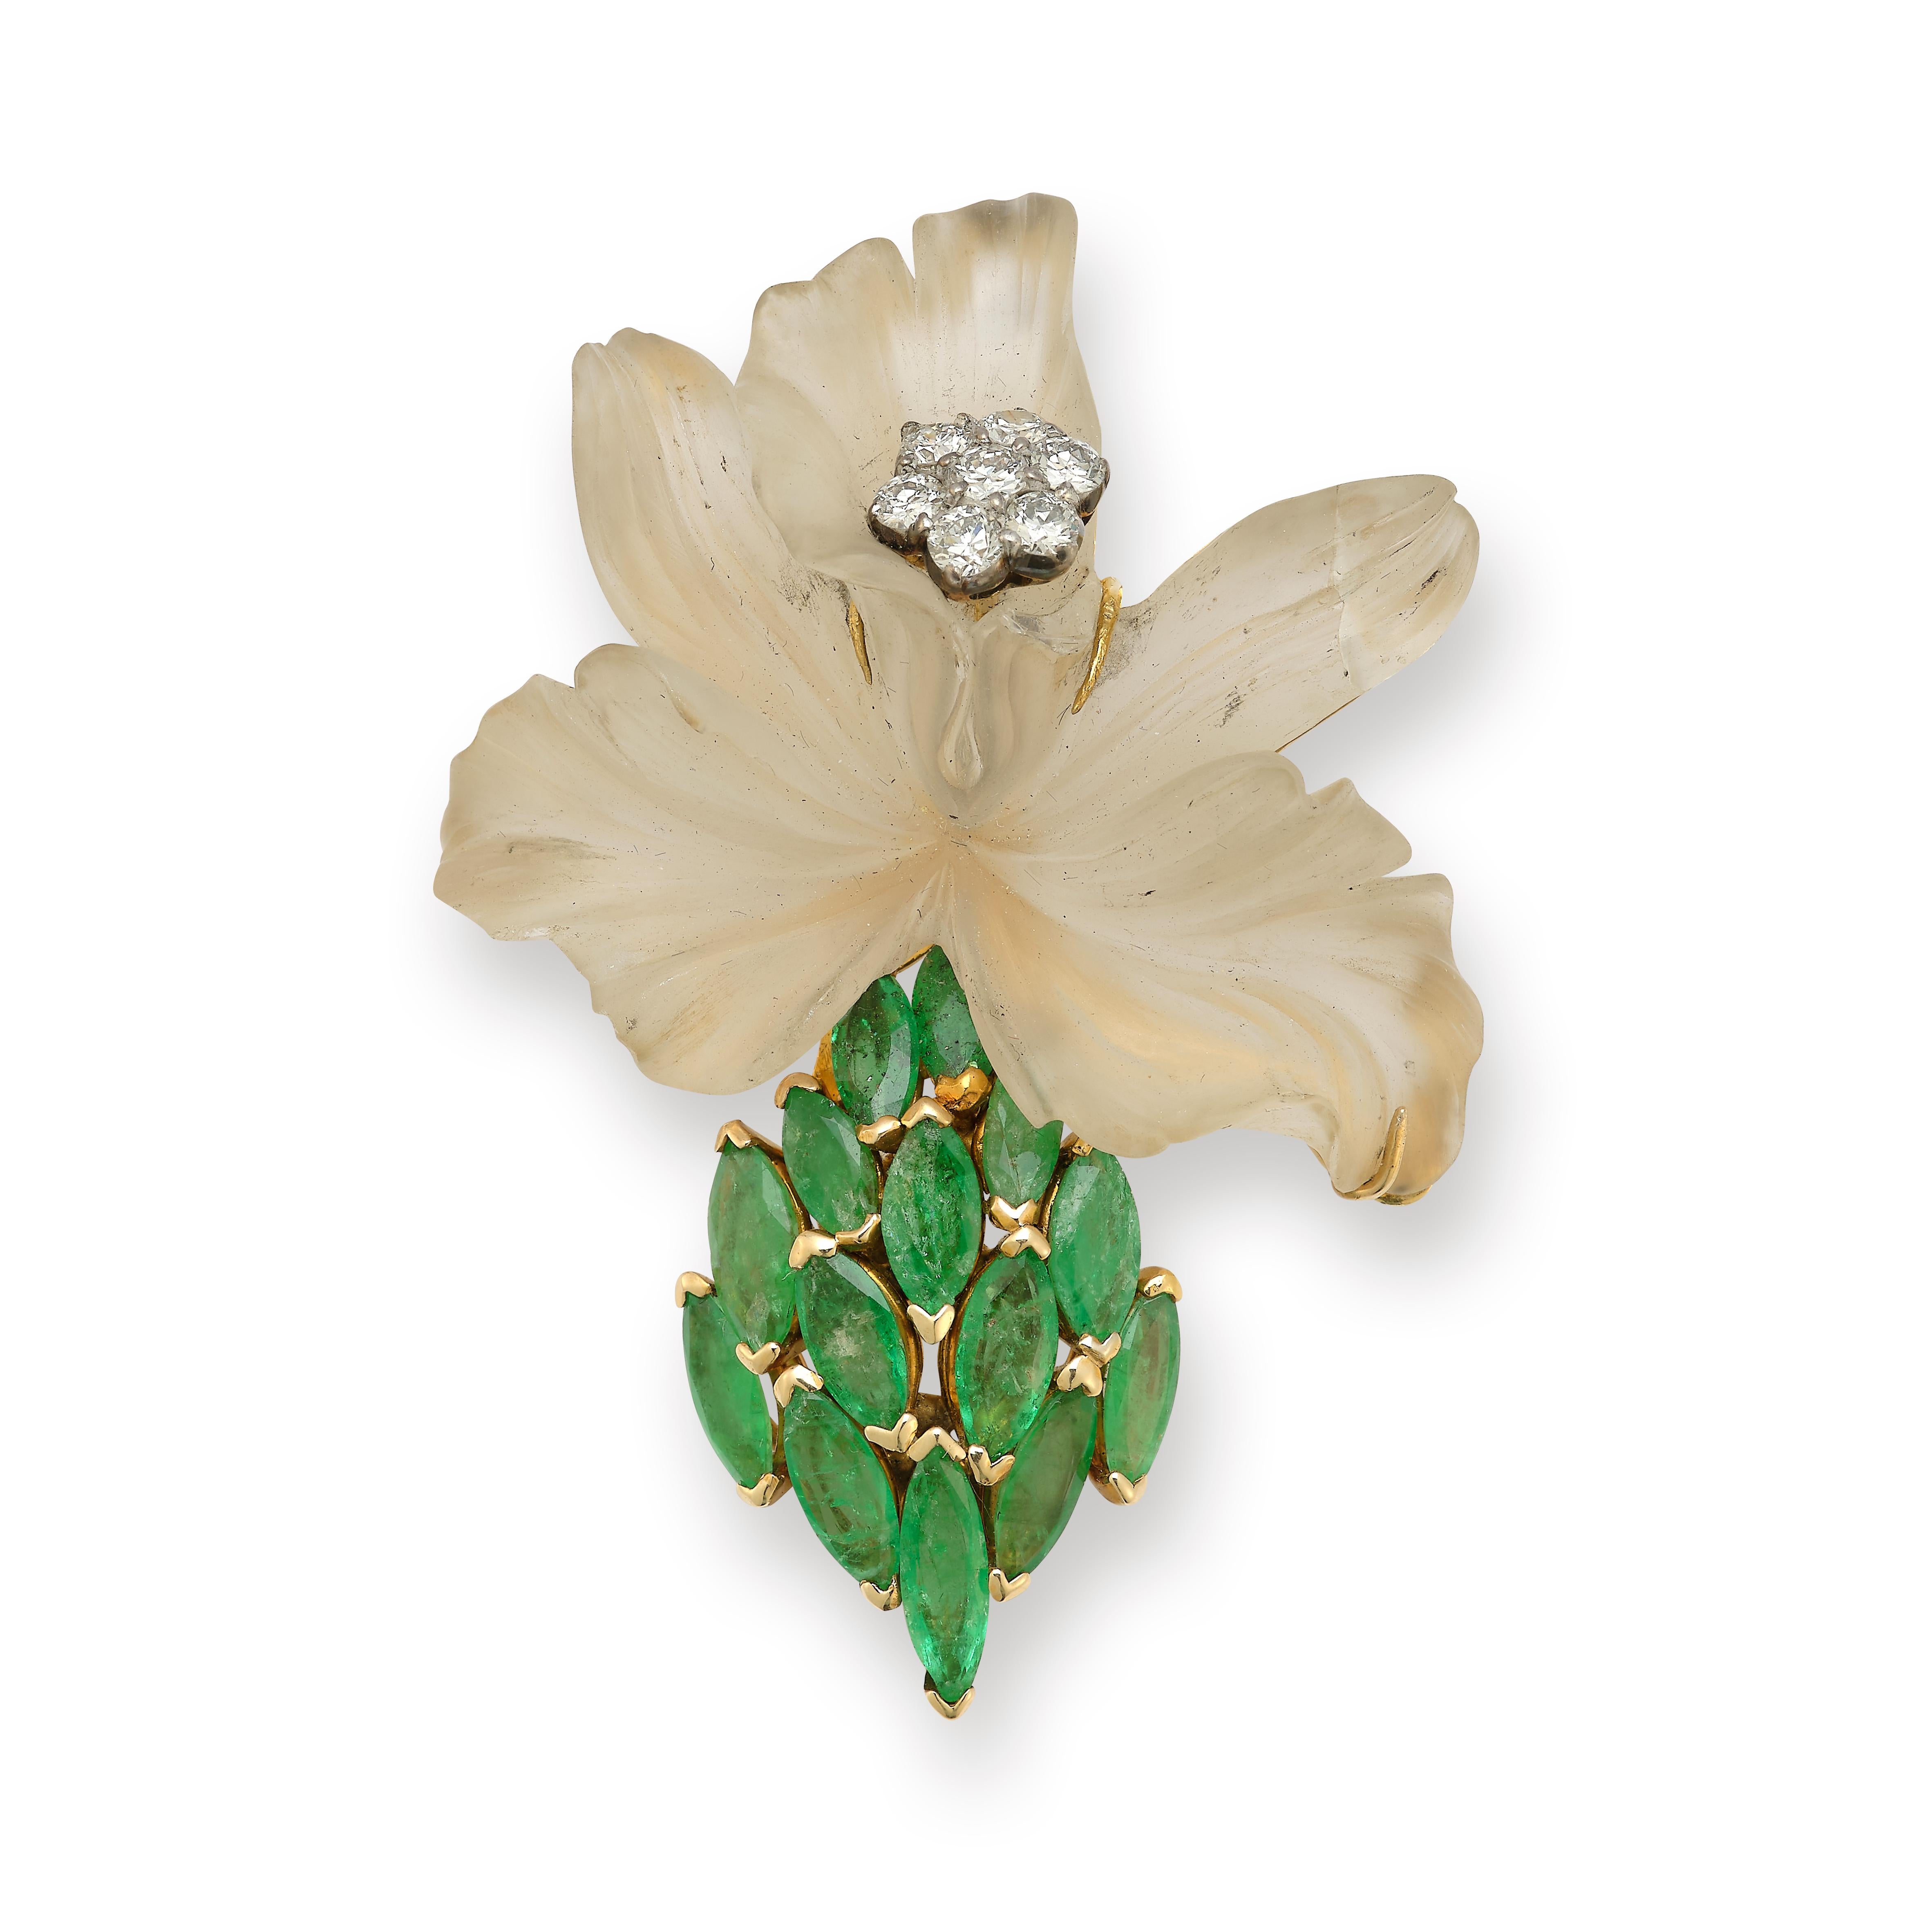 Tiffany & Co Blumenbrosche

Blumenmotiv aus geschnitztem Bergkristall mit 7 Diamanten im Rundschliff, die ein  Blume in der Mitte und 14 Smaragde im Marquise-Schliff. 

Gewicht des Diamanten: ca. 0,88 Karat 

Smaragd Gewicht: etwa .93 cts